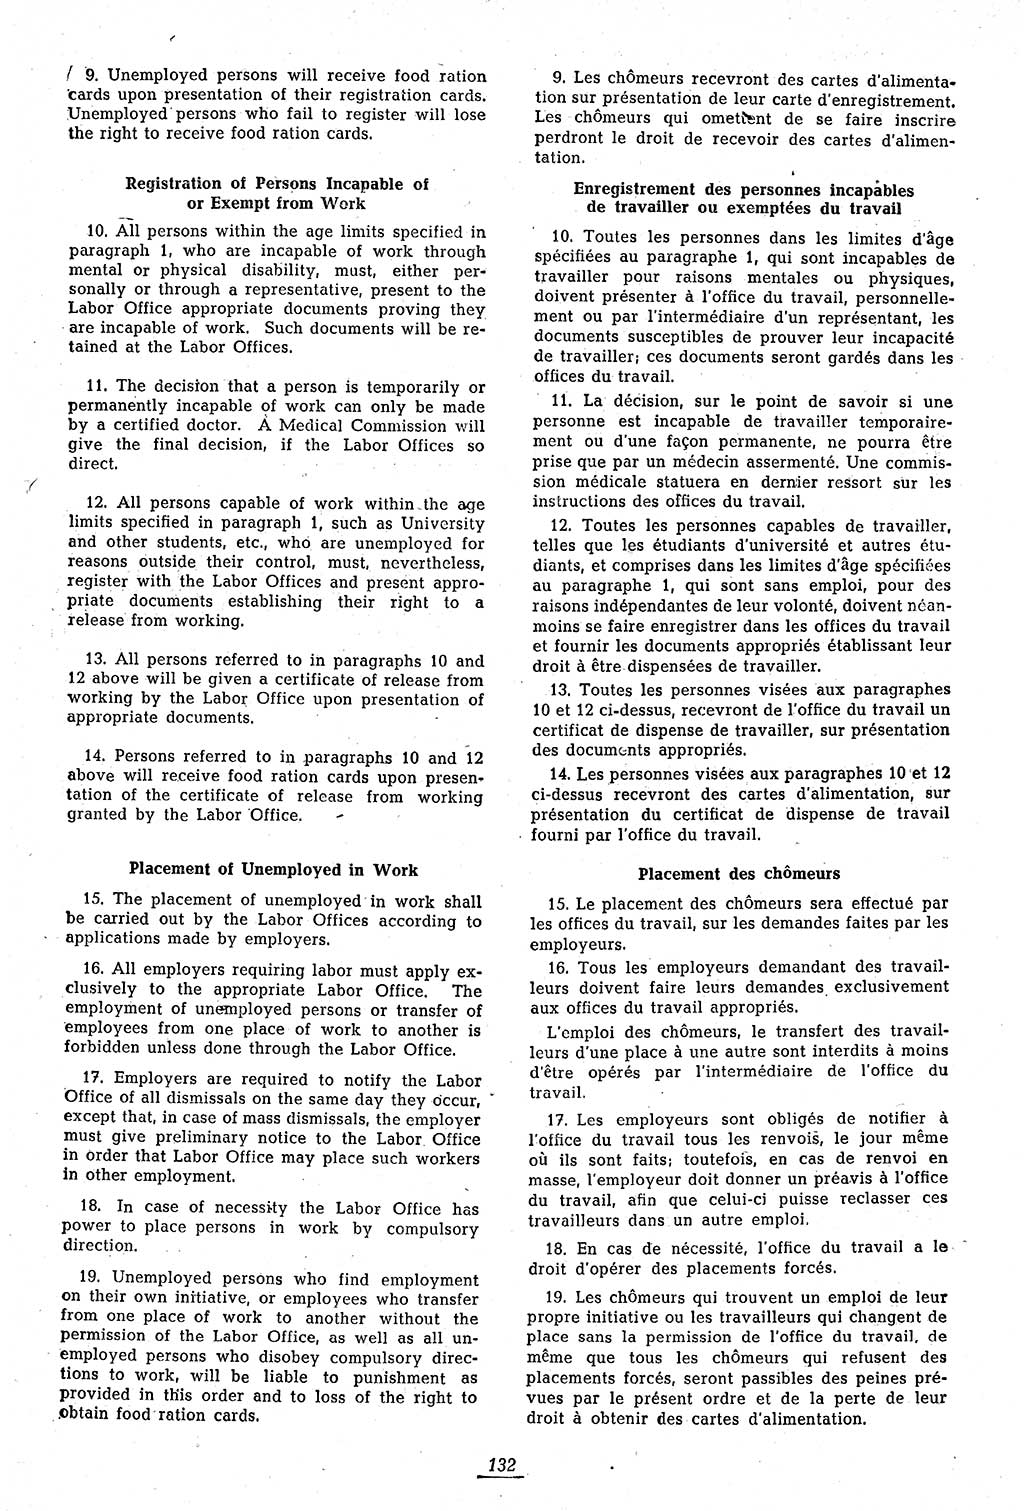 Amtsblatt des Kontrollrats (ABlKR) in Deutschland 1946, Seite 132/1 (ABlKR Dtl. 1946, S. 132/1)